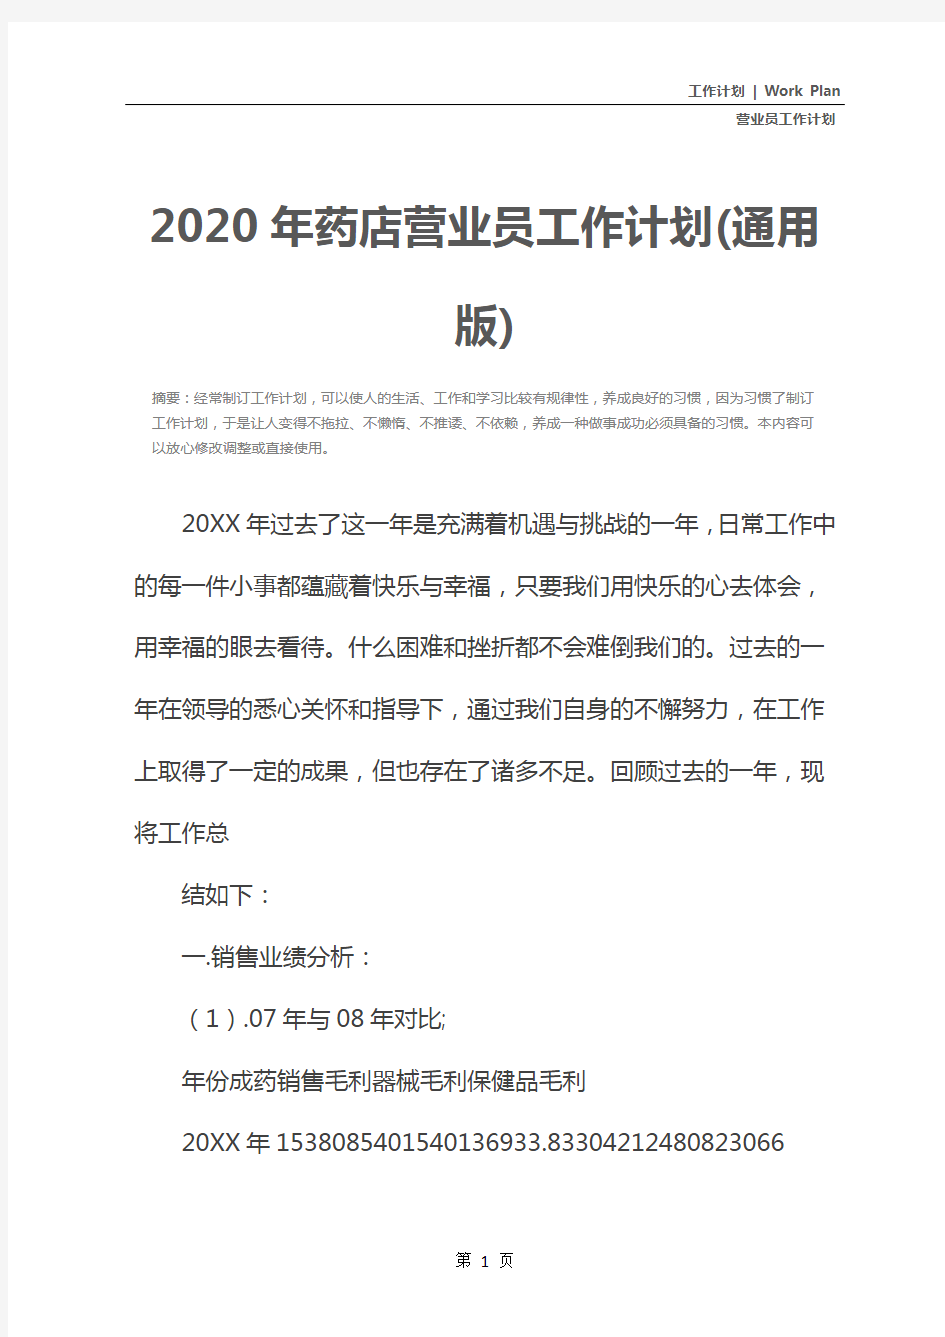 2020年药店营业员工作计划(通用版)